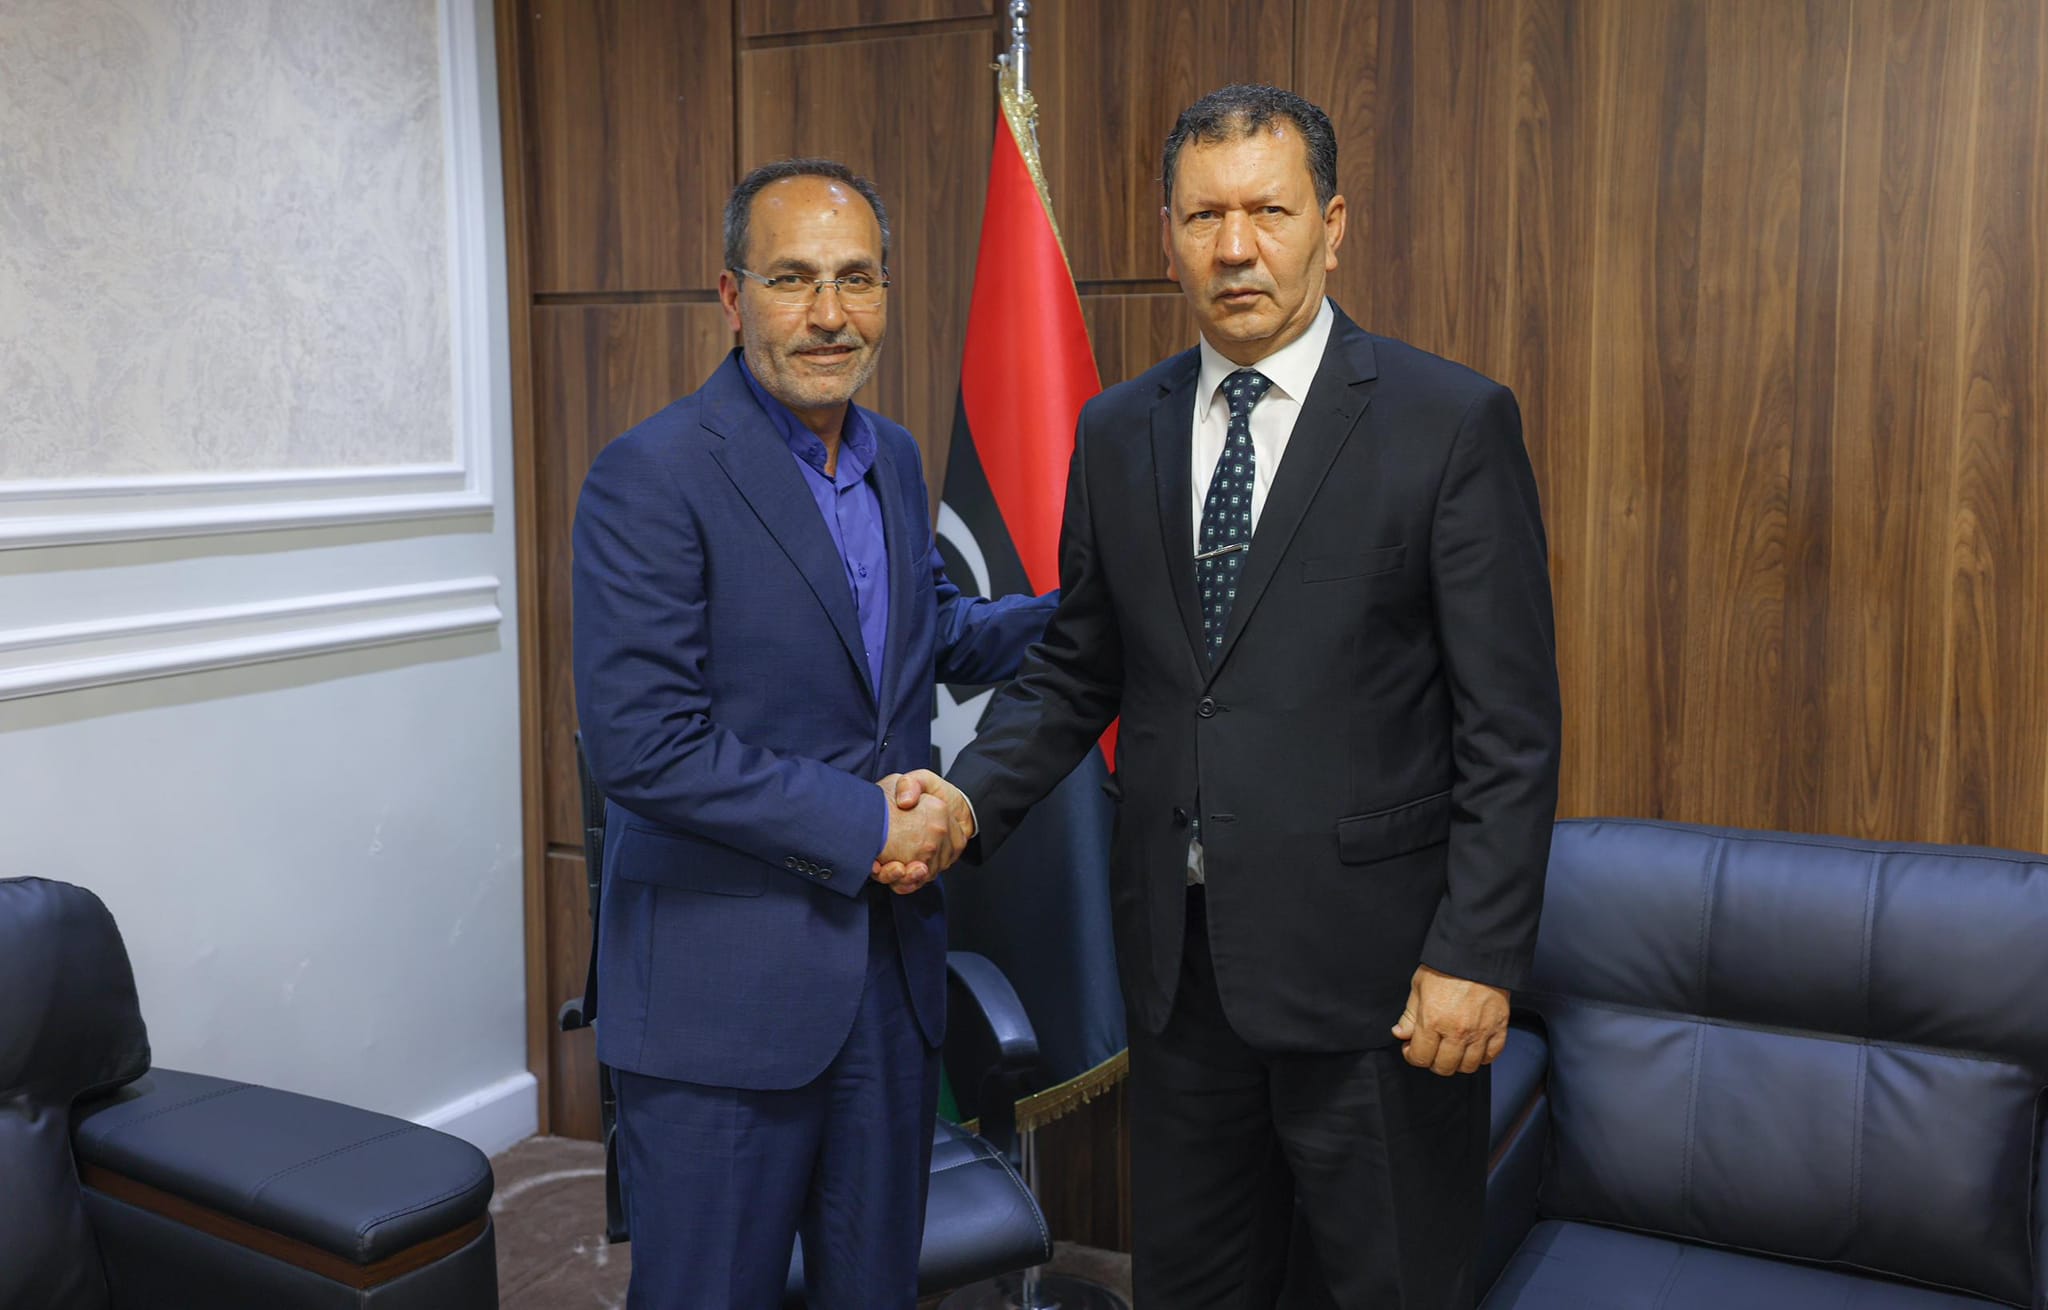 وكيل وزارة الخارجية للشؤون السياسية يجتمع مع القائم بأعمال سفارة إيران في طرابلس .